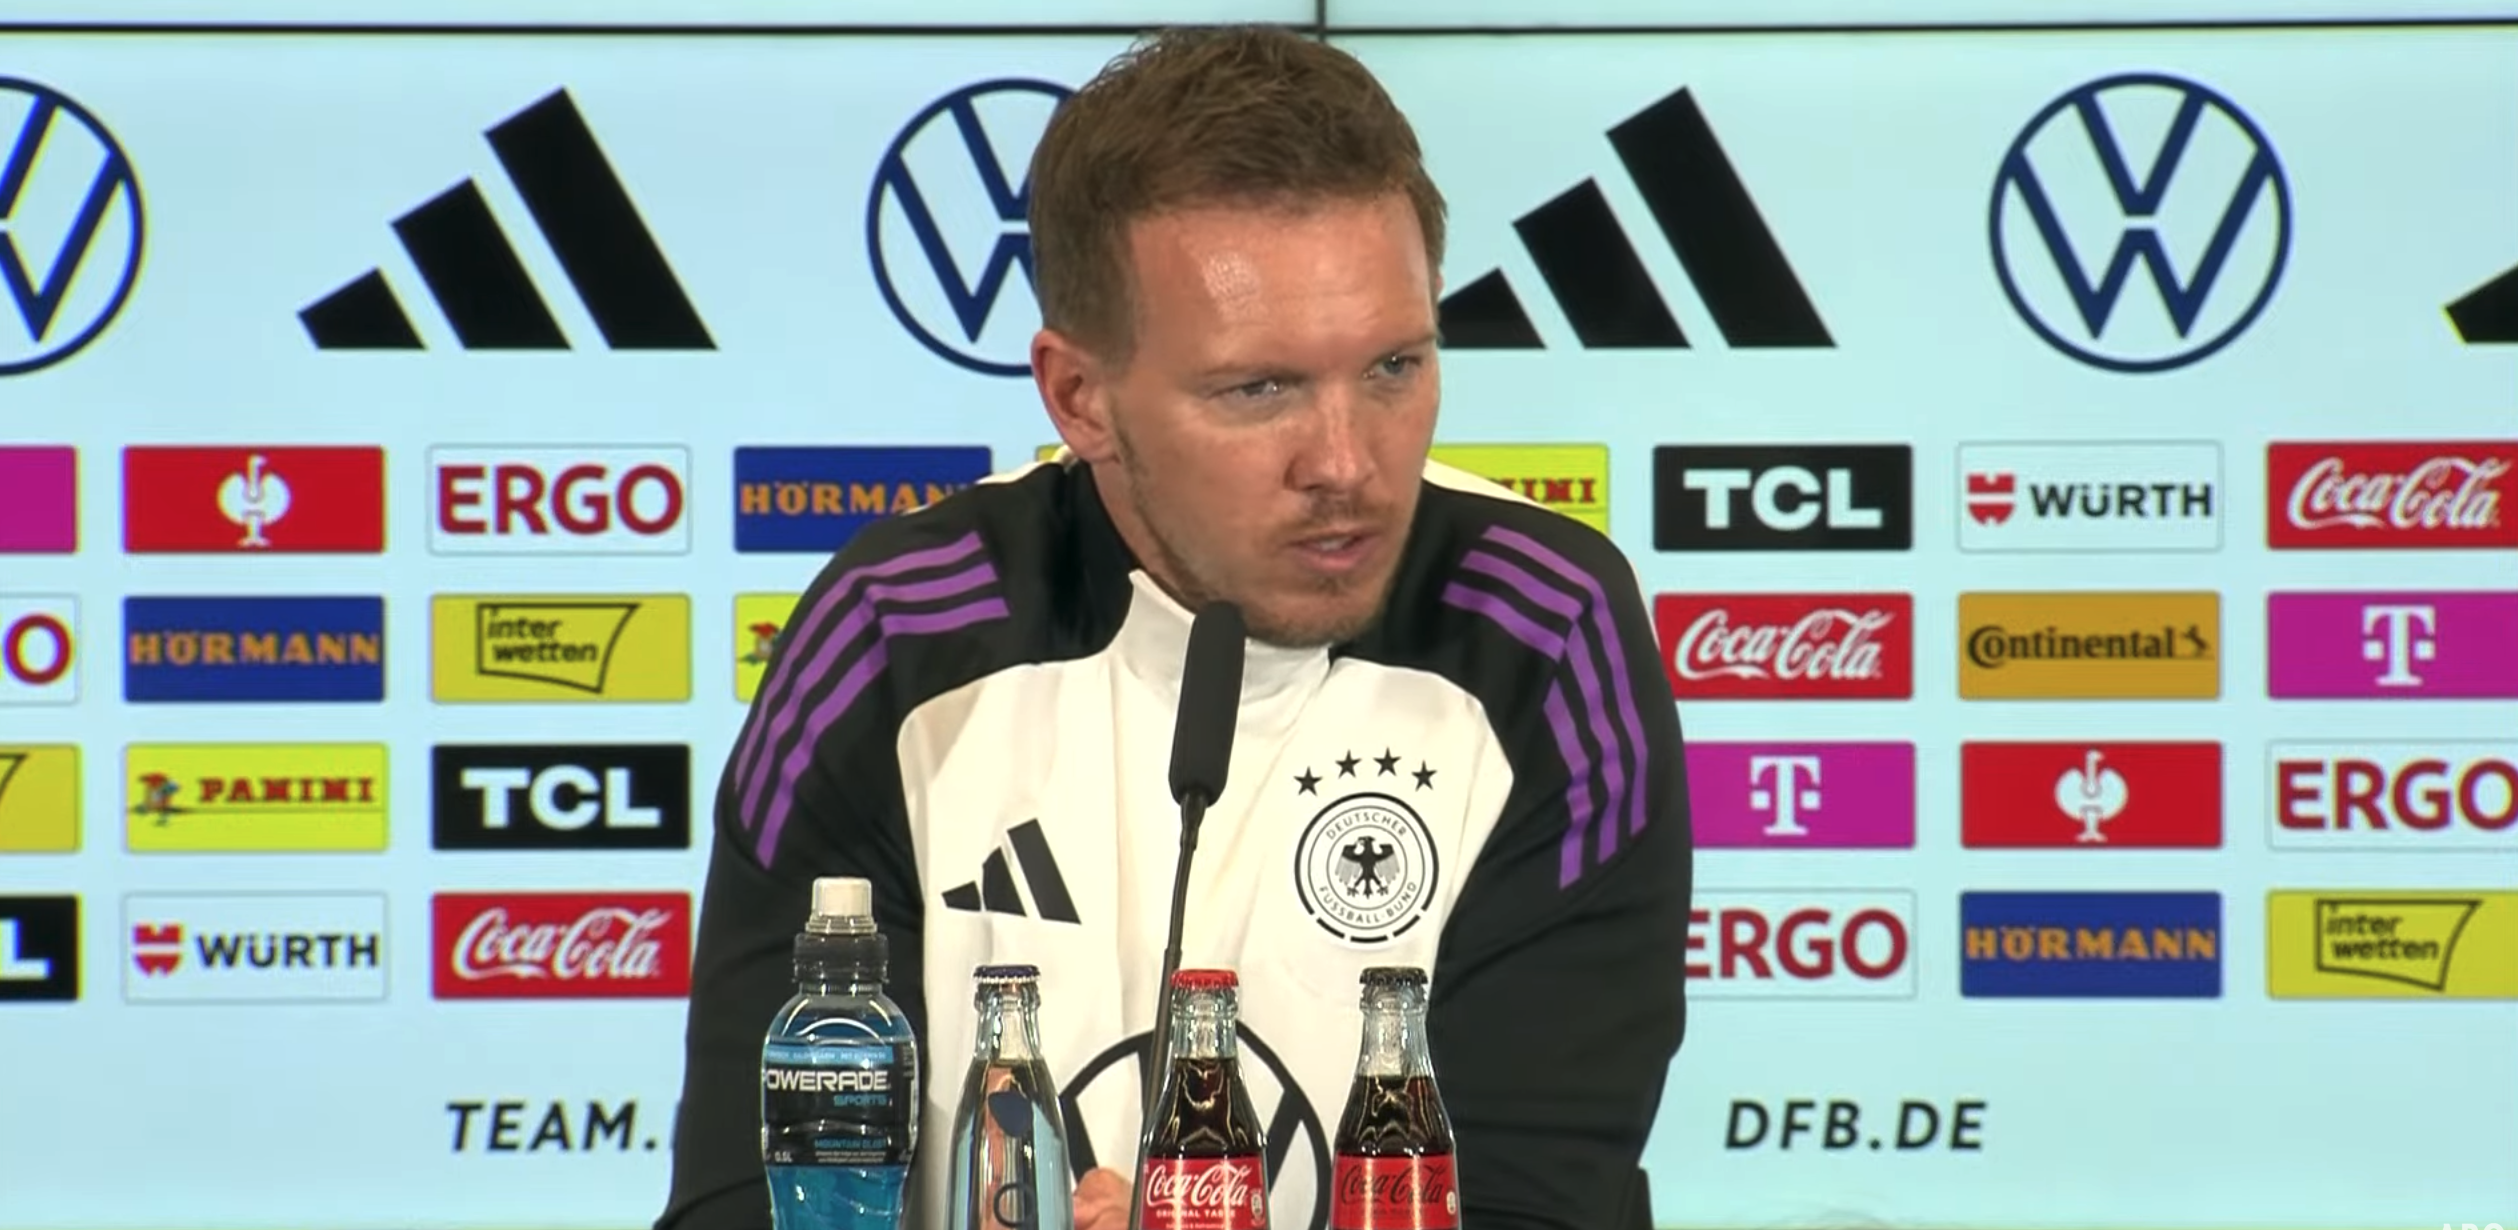 Neuendorf bestätigt: DFB setzt langfristig auf Nagelsmann als Trainer